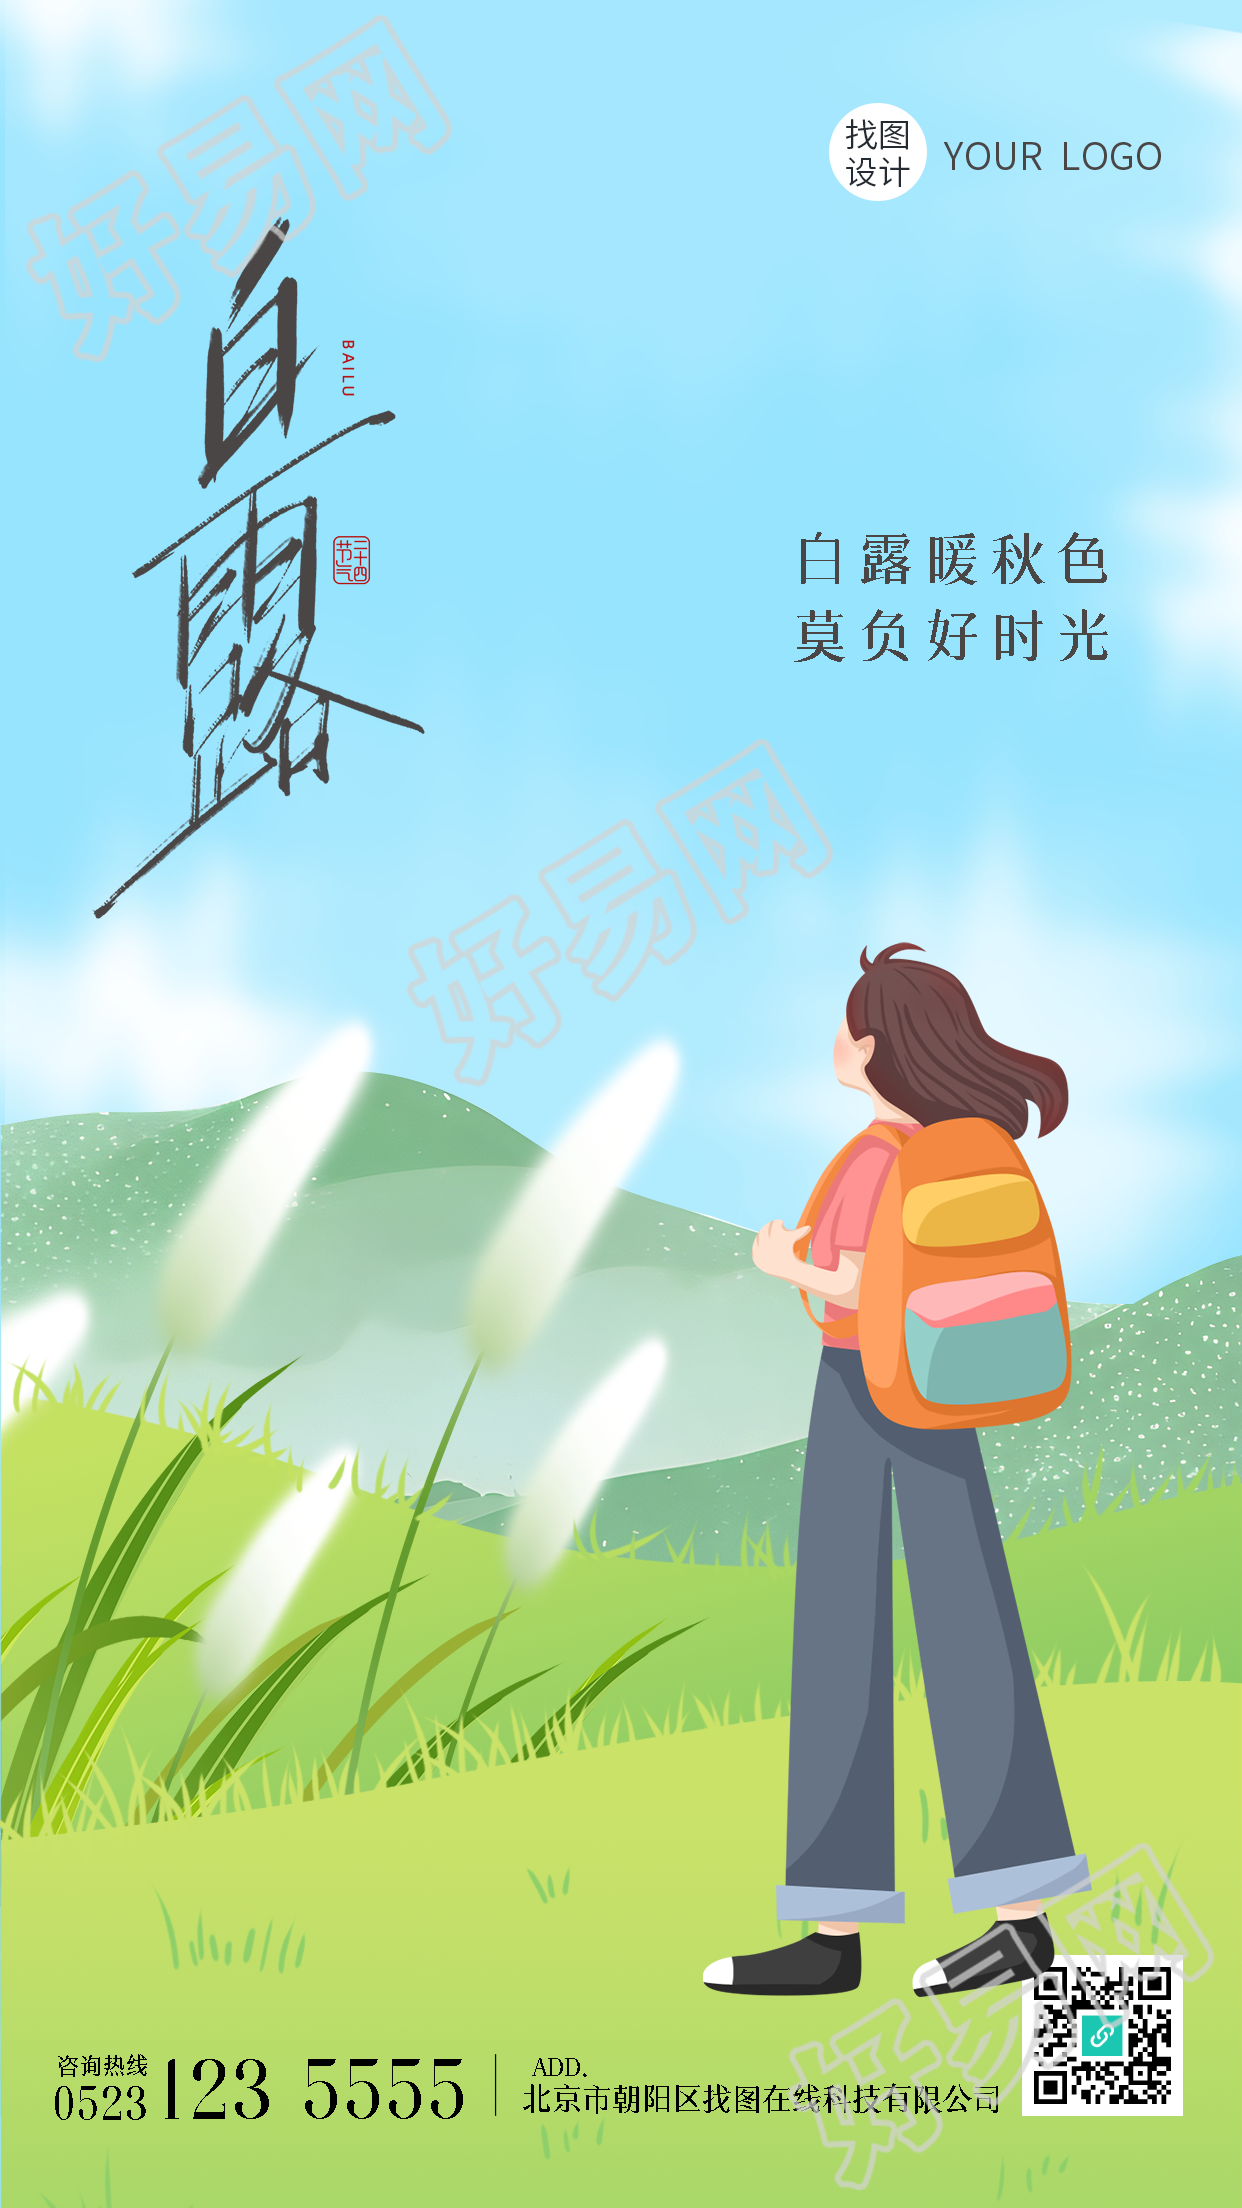 卡通风格白露节气青草地上的女孩手机海报